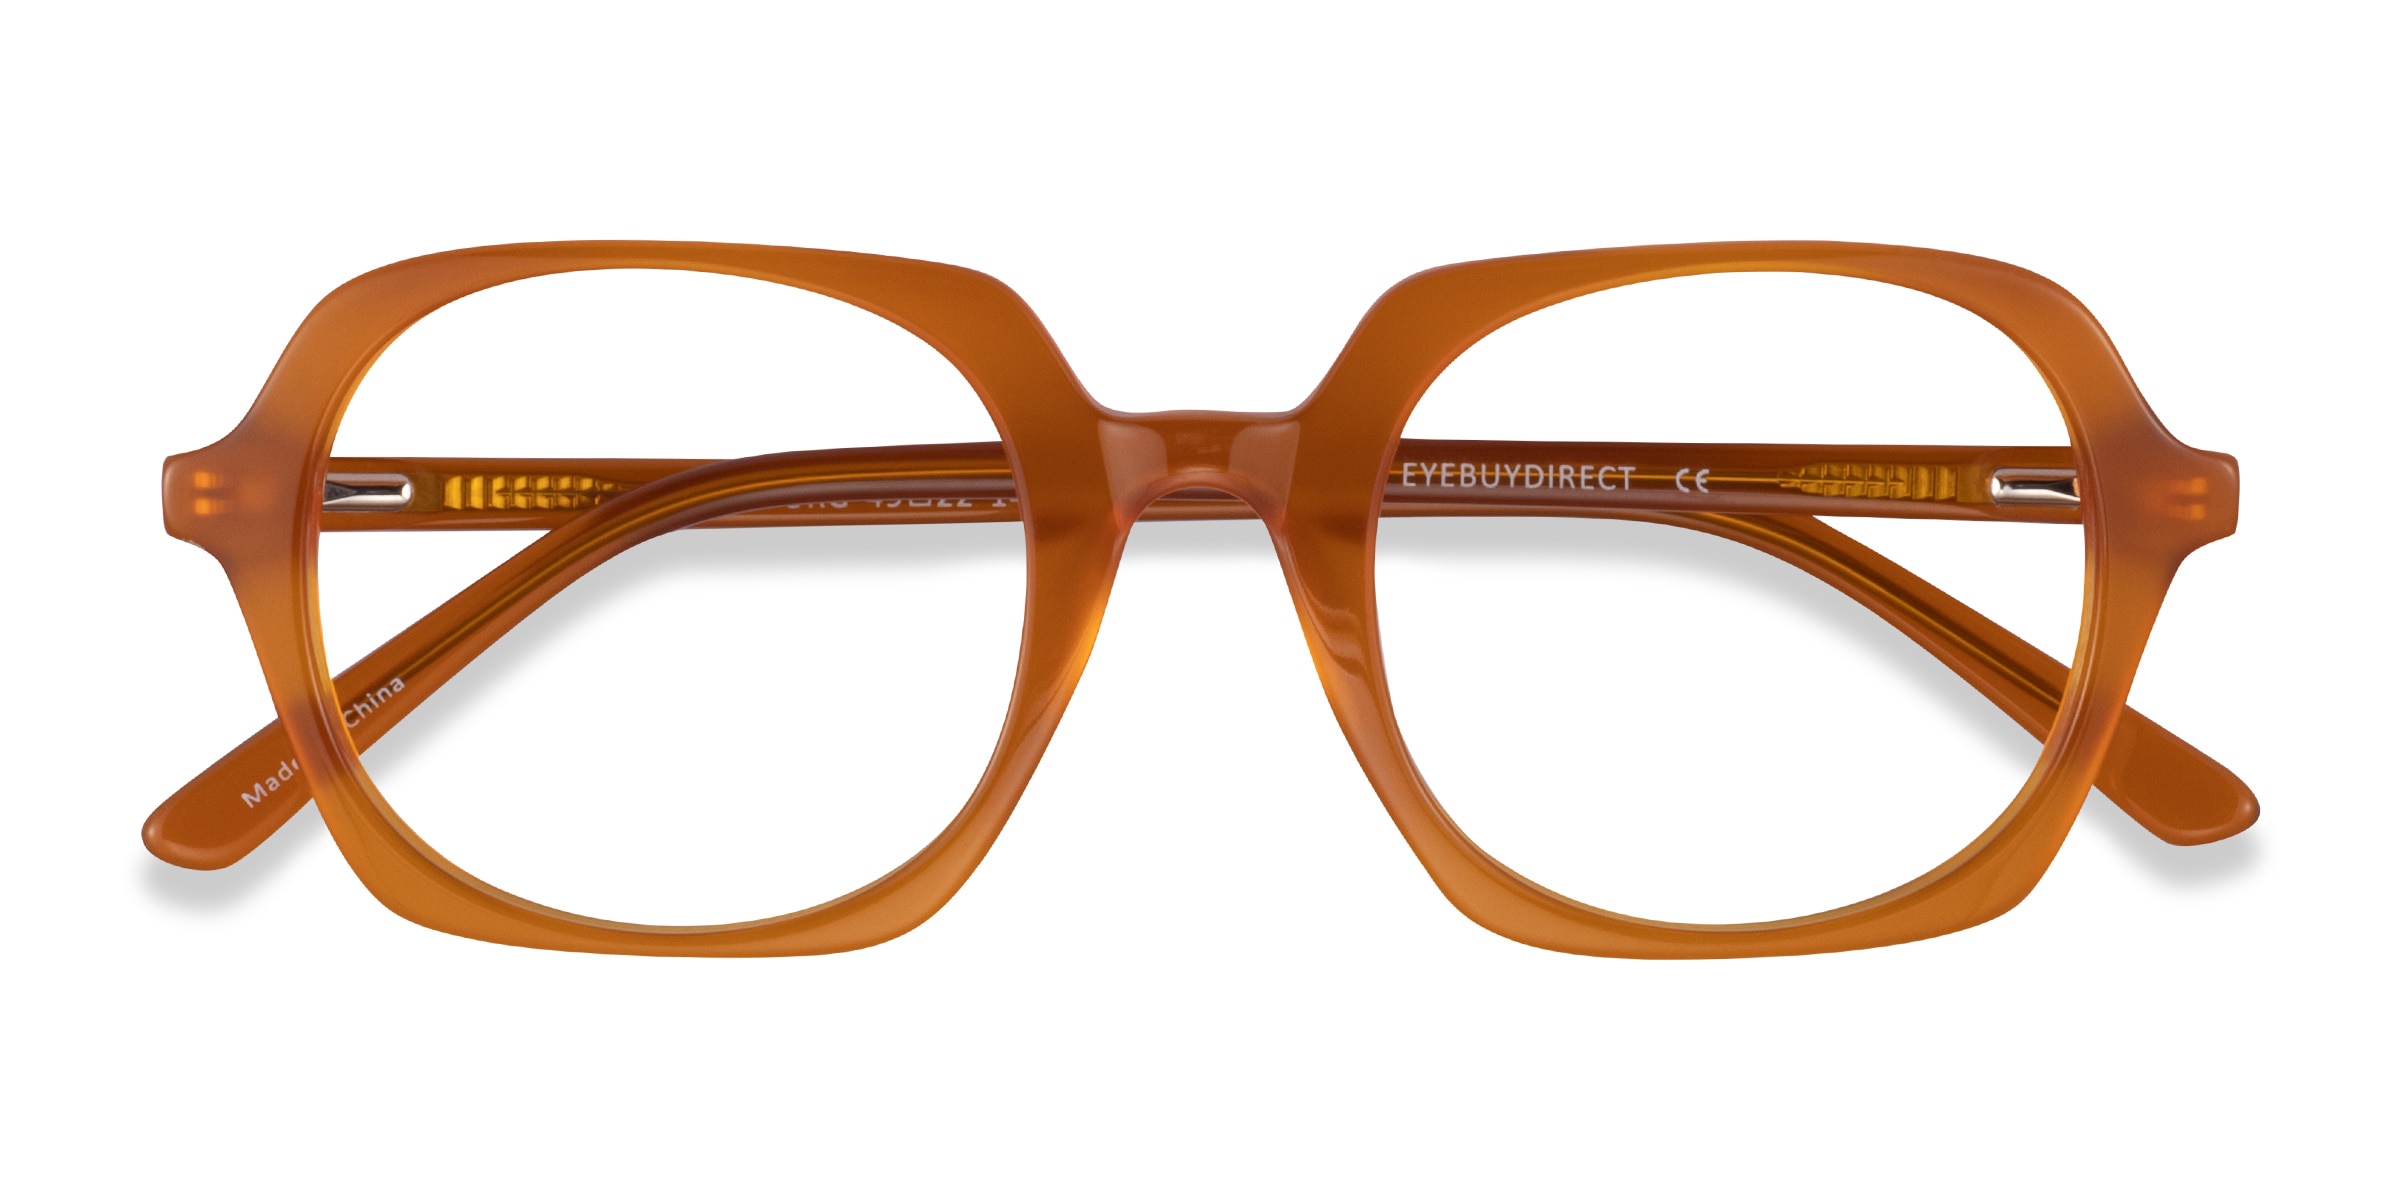 Faubourg Geometric Orange Full Rim Eyeglasses | Eyebuydirect